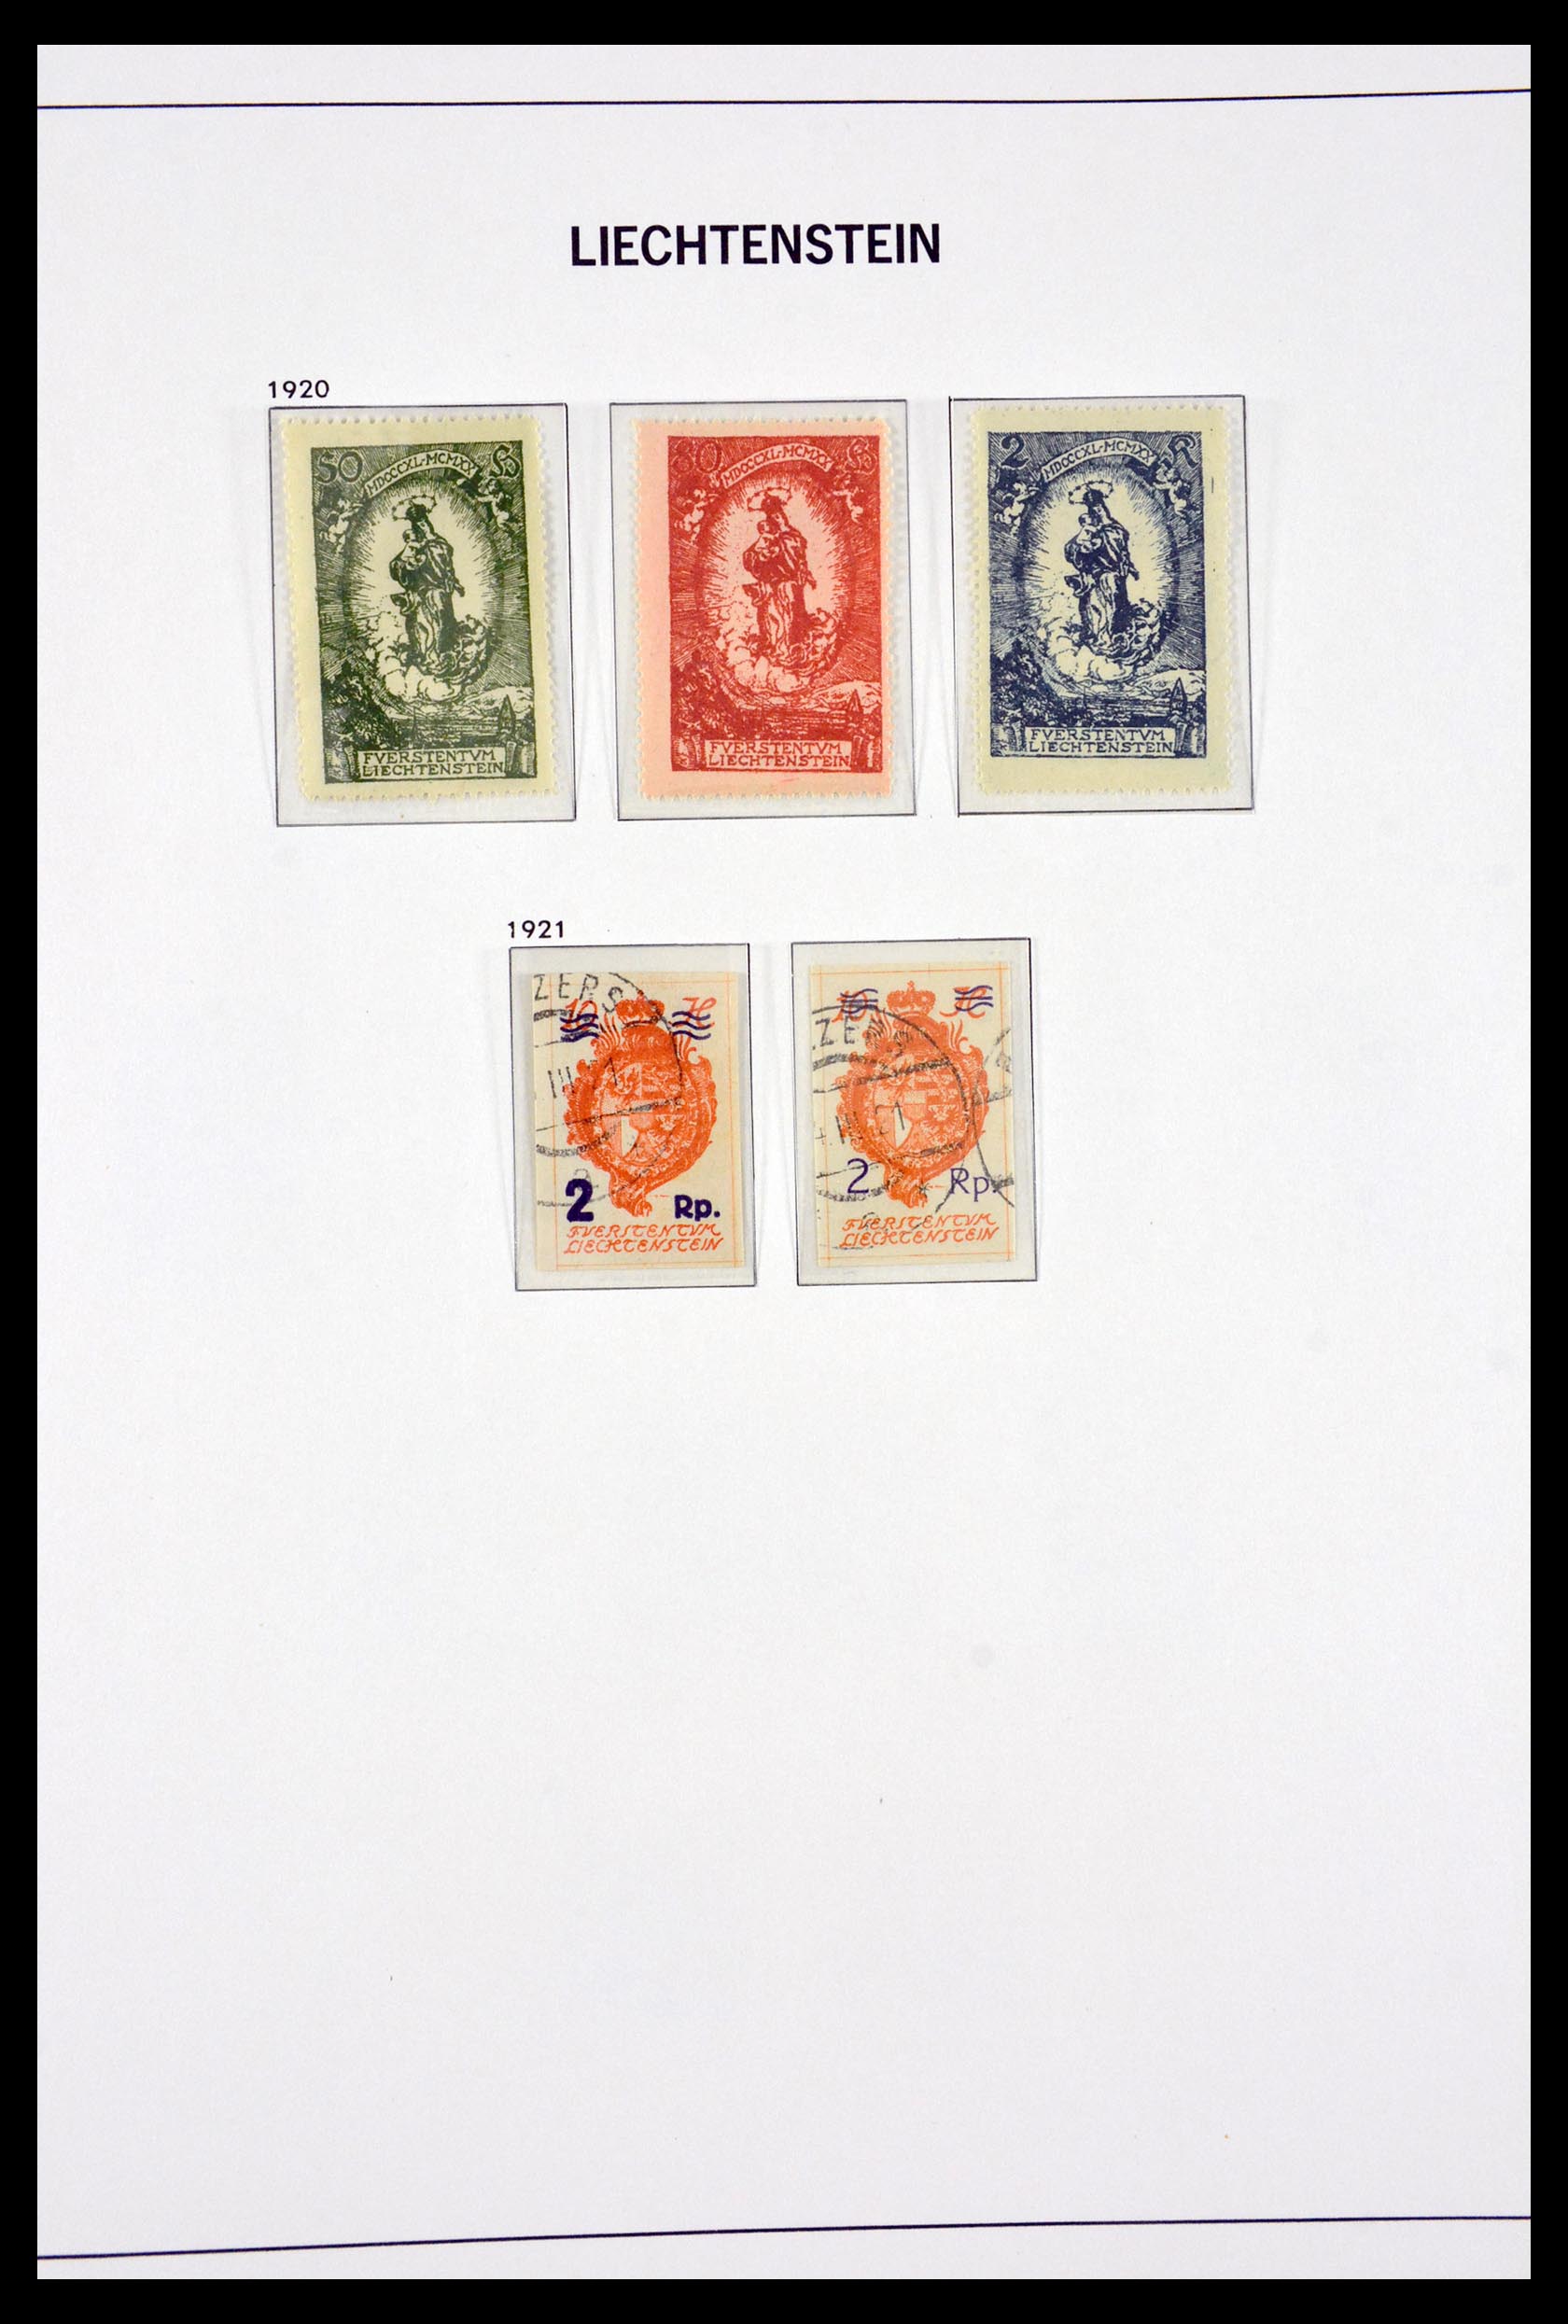 29750 004 - 29750 Liechtenstein 1912-2014.